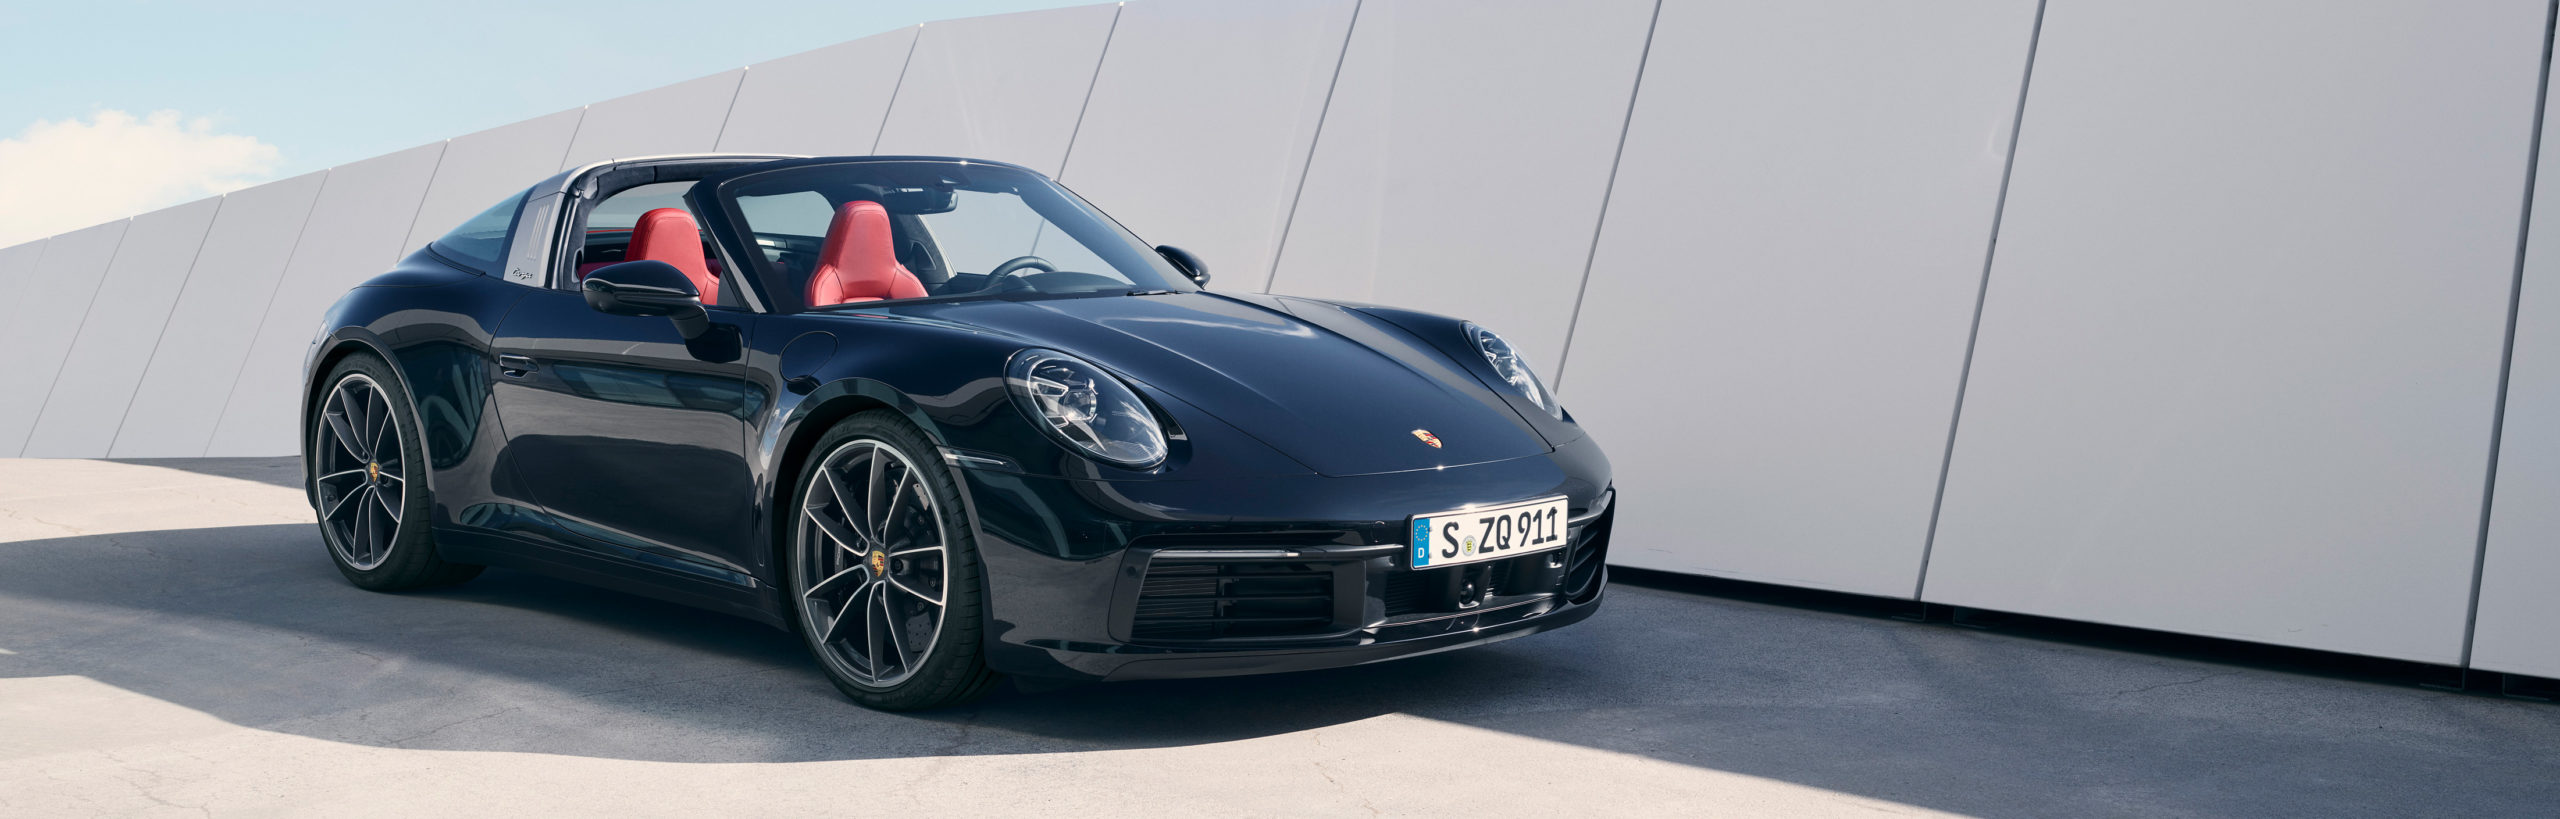 Porsche 911 Targa, diseño puro y elegante